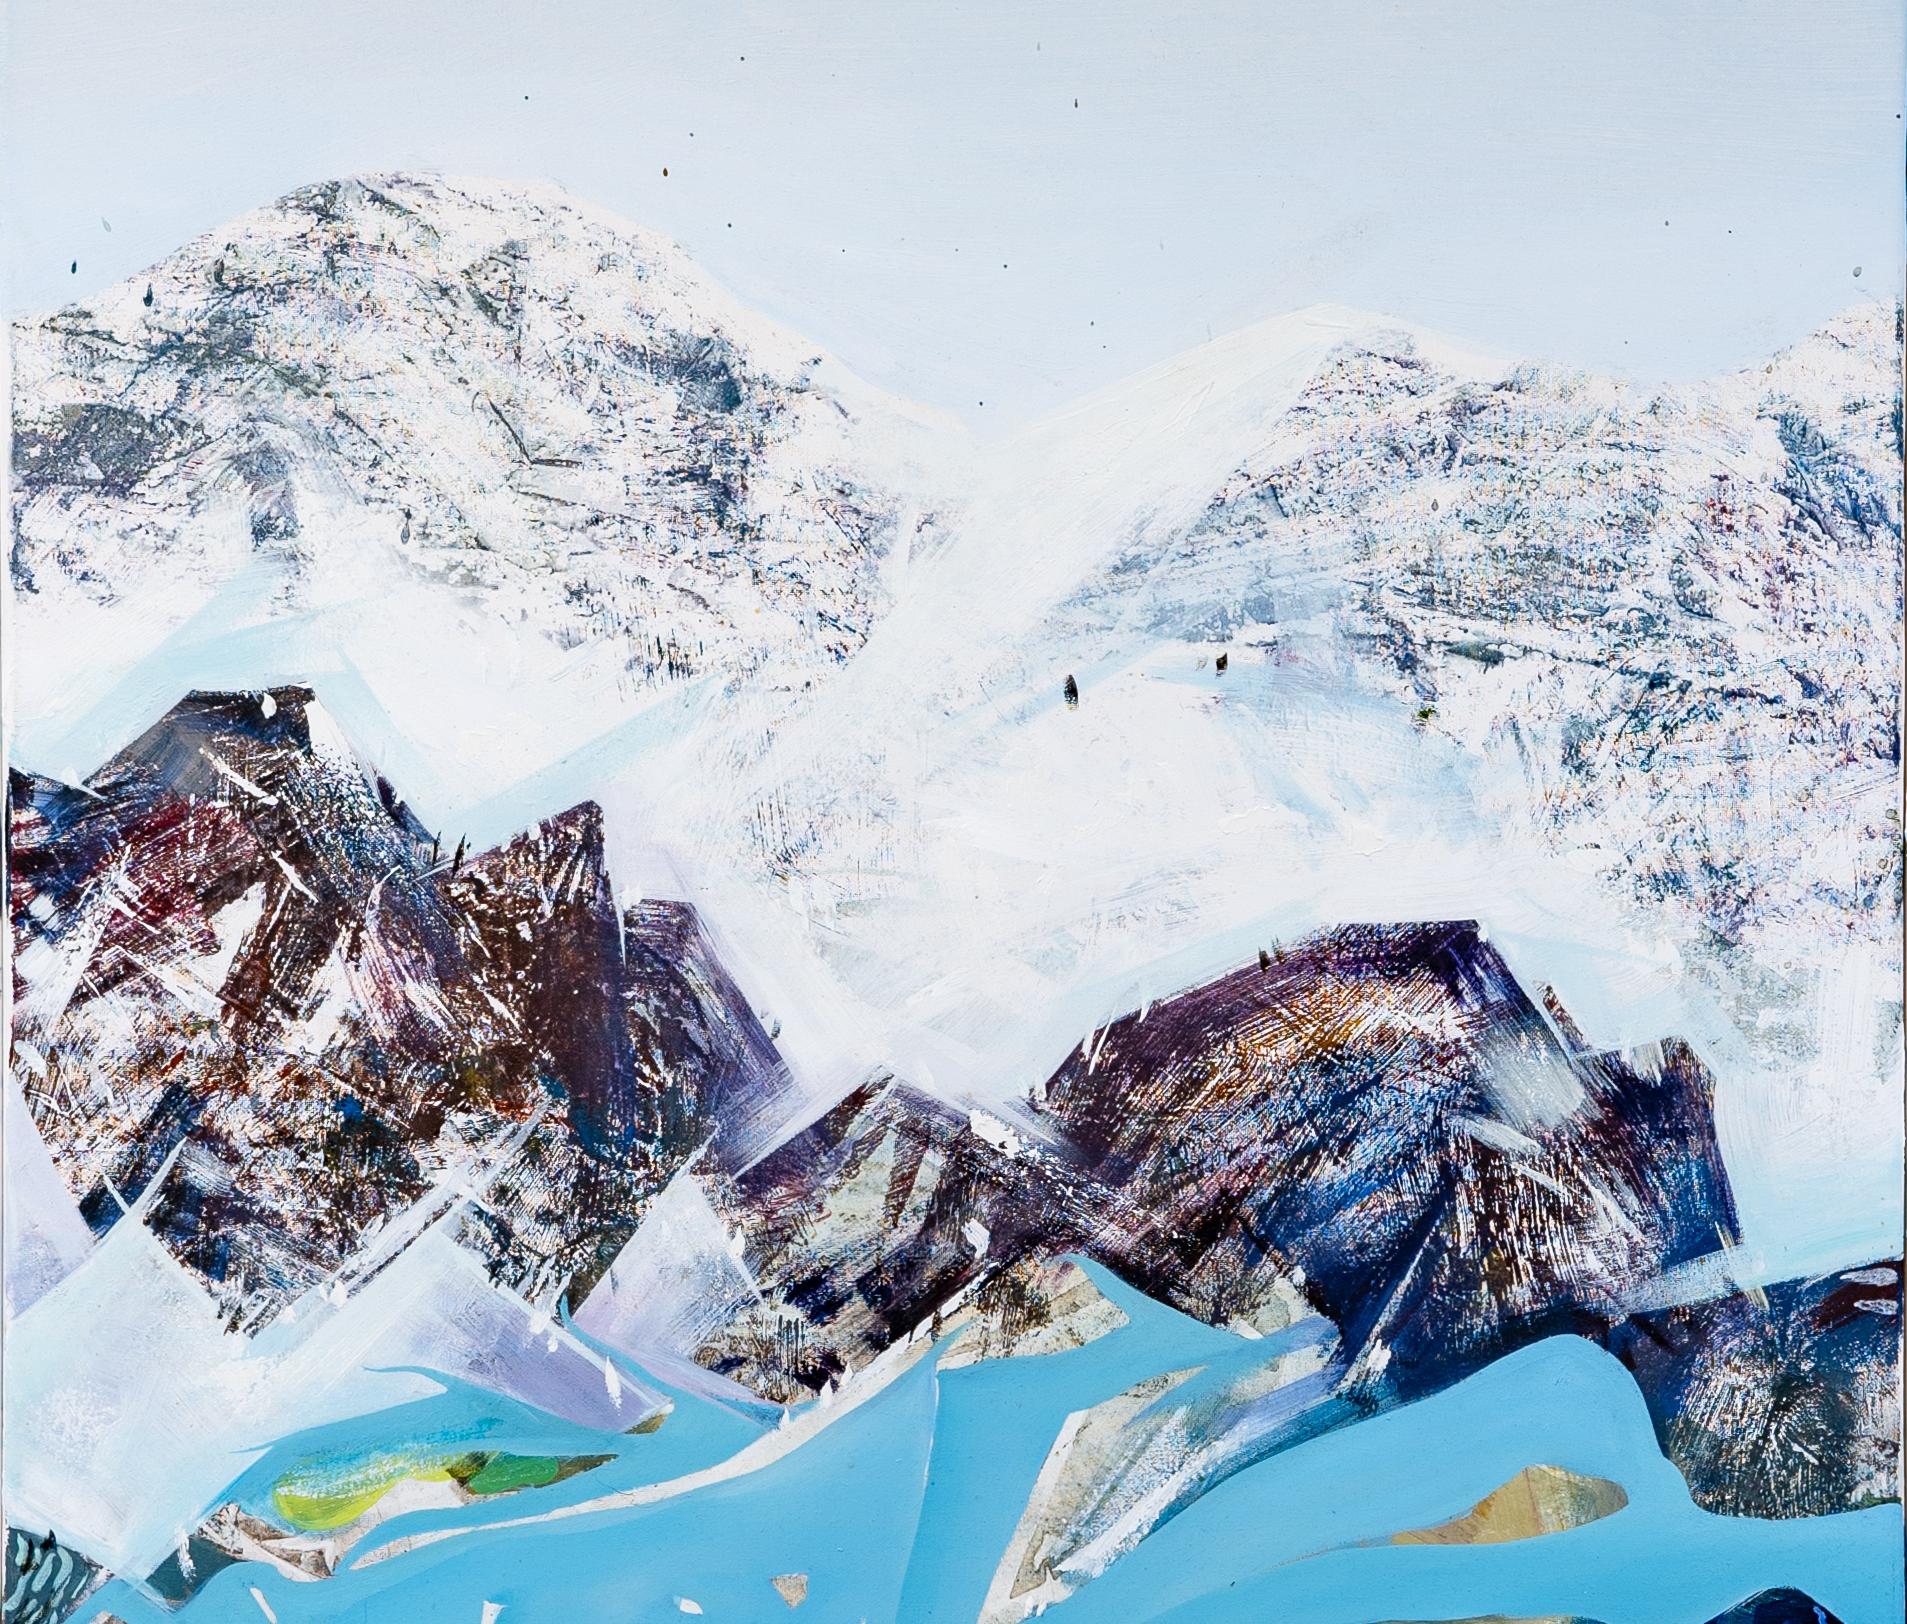 Peinture à l'huile de l'artiste Shuo Liu. L'œuvre représente le magnifique paysage du lac de Thoune en Suisse. L'artiste a passé beaucoup de temps à apprécier le paysage pendant son séjour dans la région. Il adorait les pins qui s'y trouvaient et a